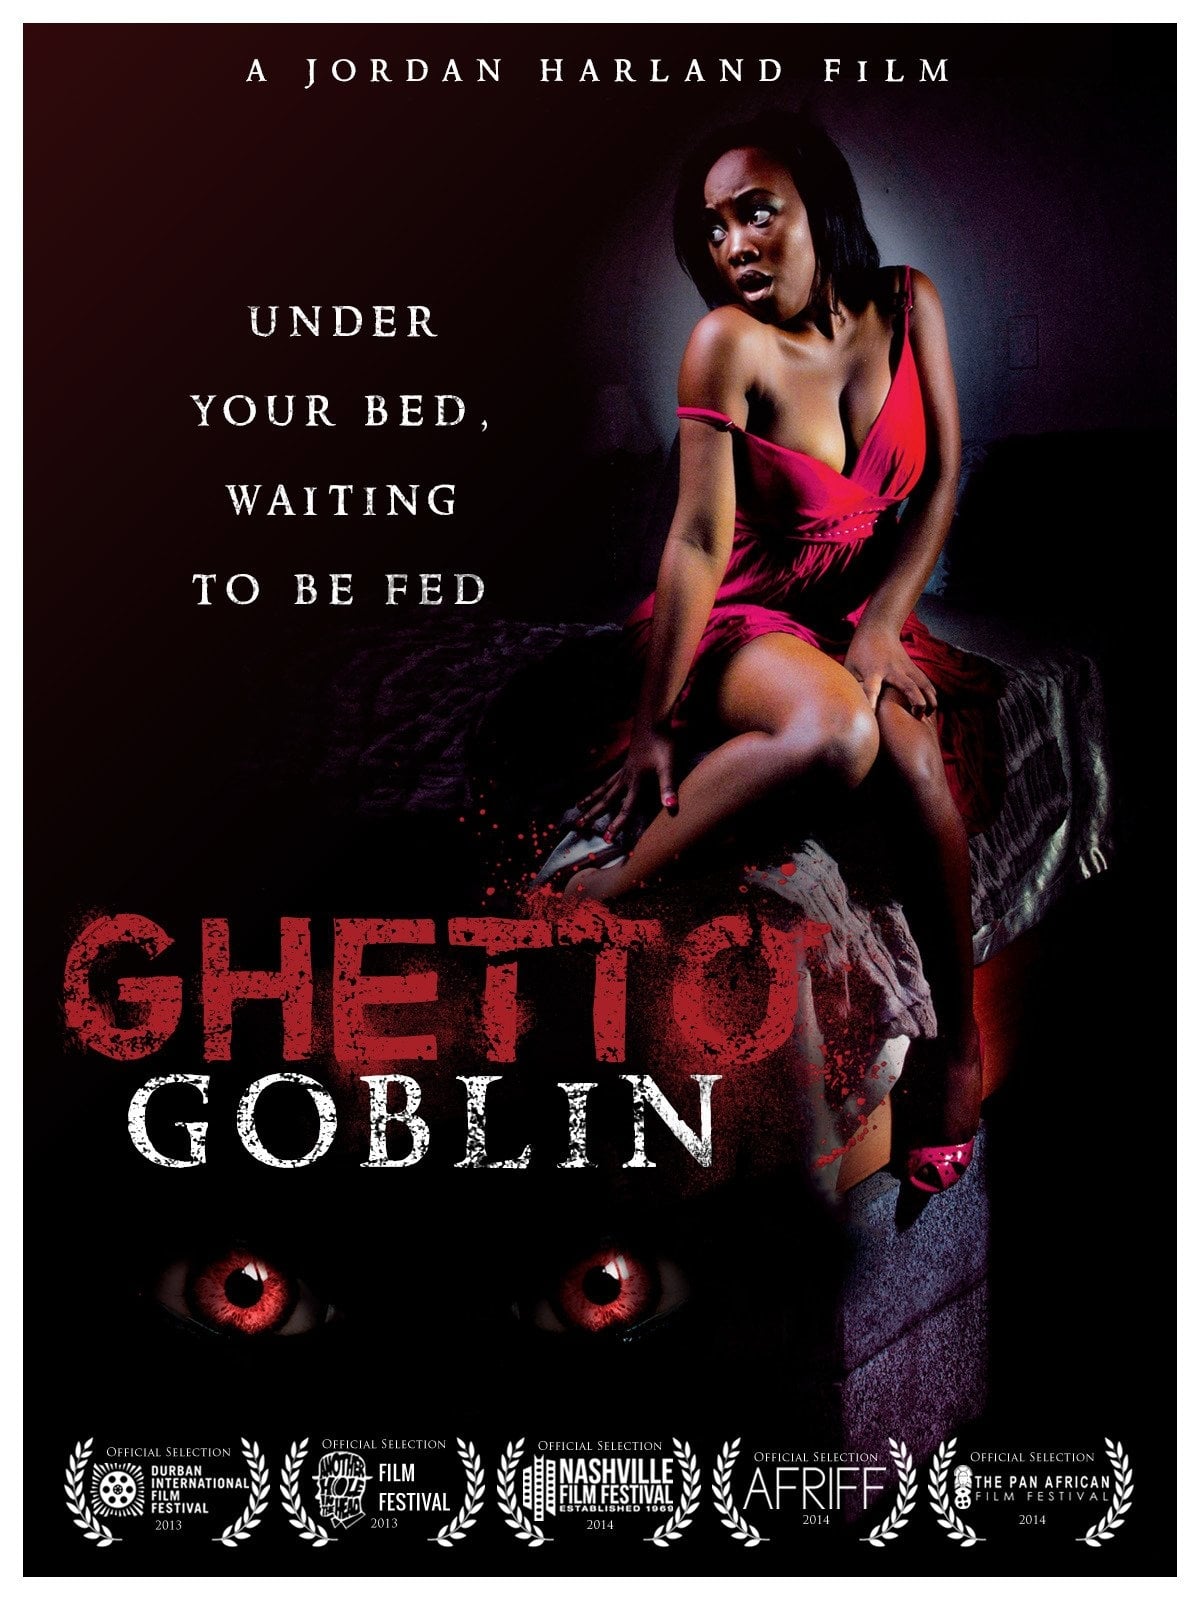 Ghetto Goblin